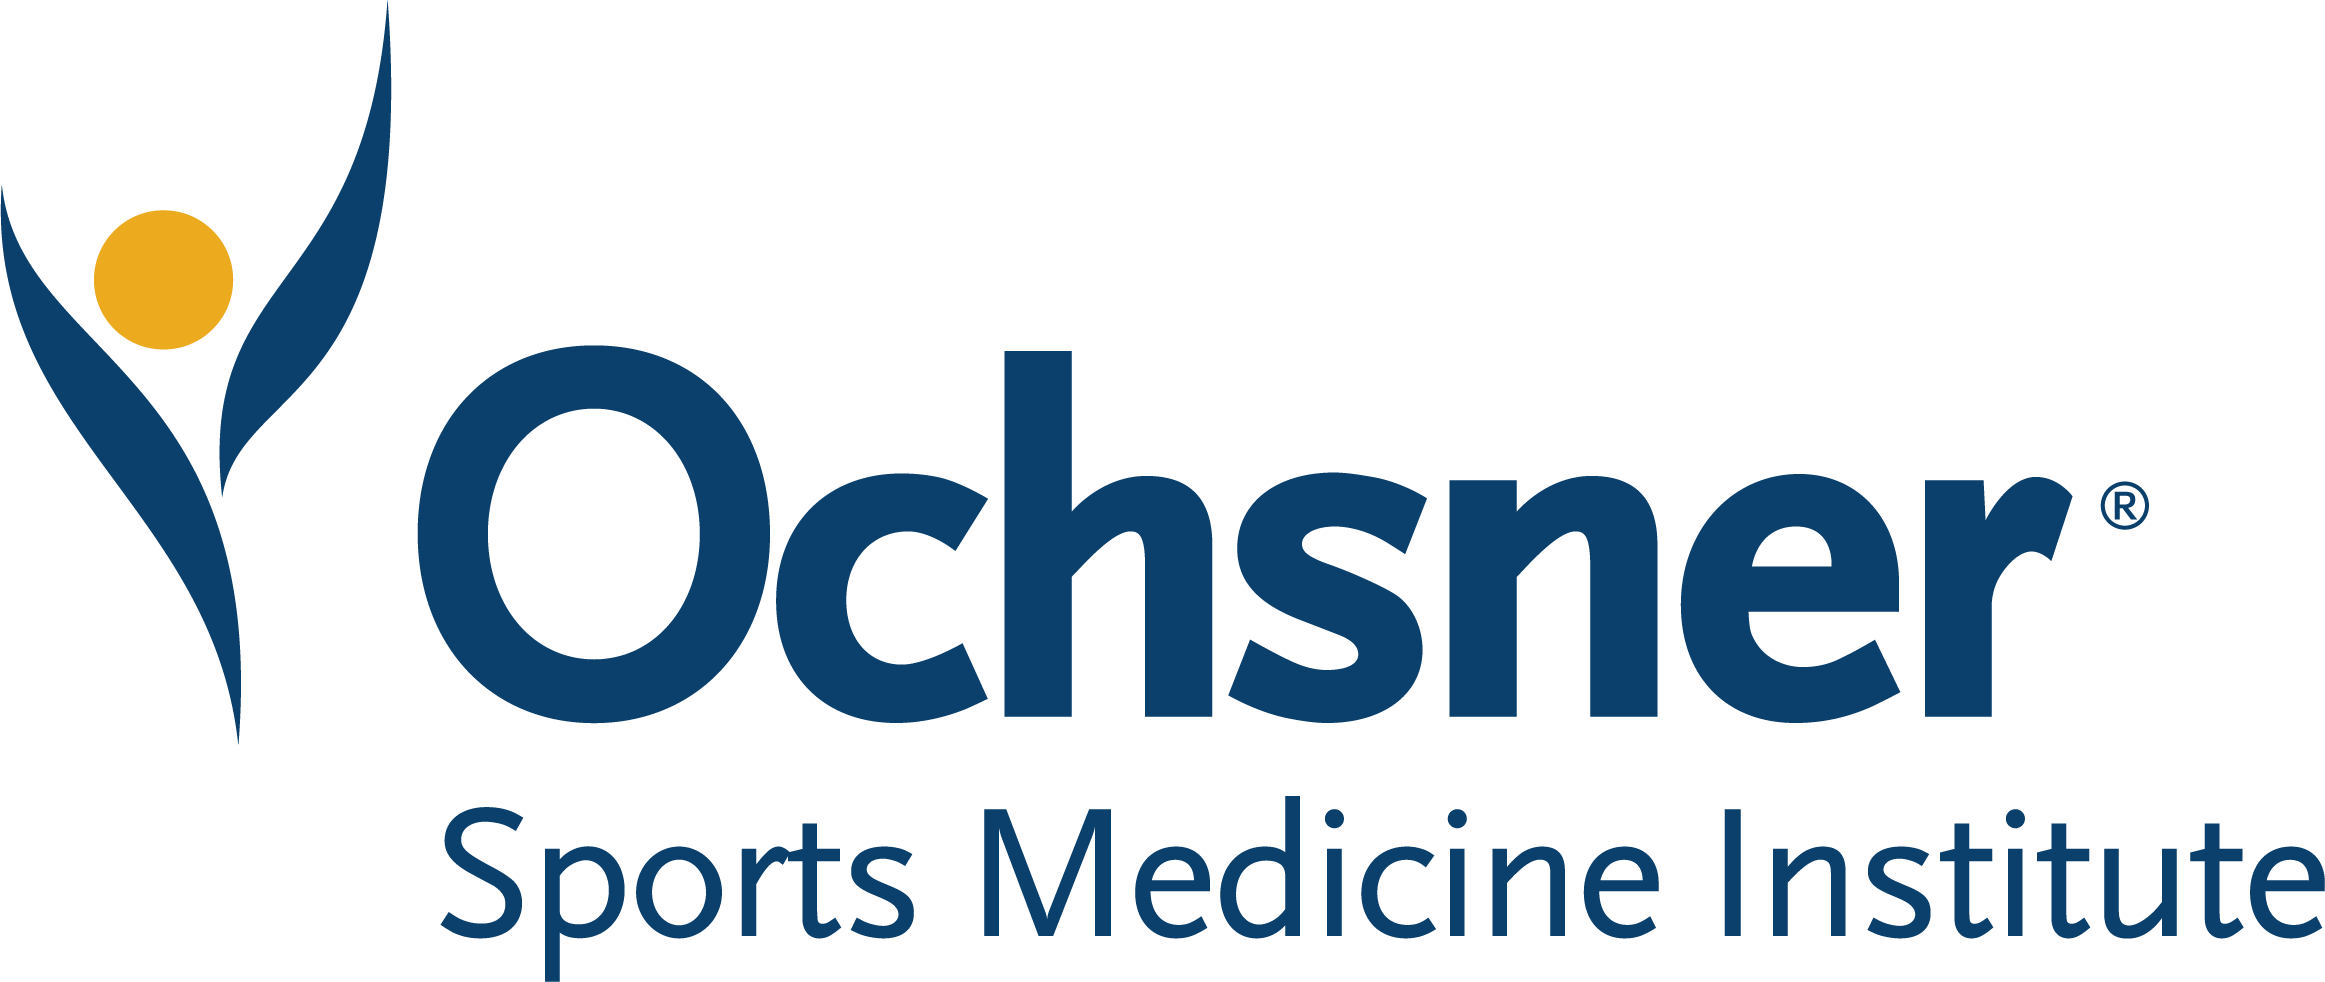 OSMI logo